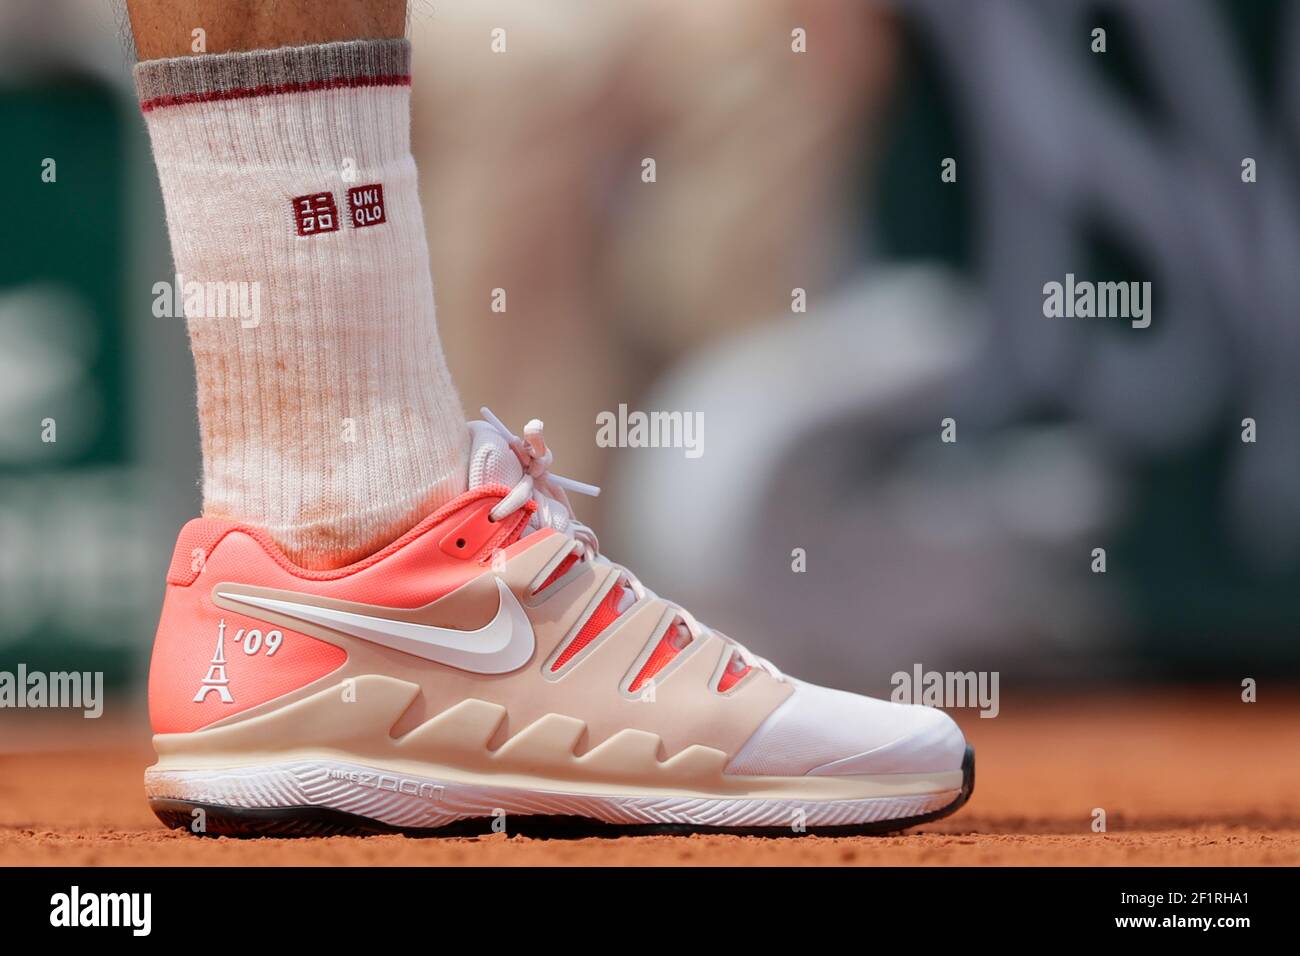 Chaussures Nike de Roger FEDERER (SUI) avec la Tour Eiffel 09 lors du  Roland-Garros 2019, Grand Chelem tennis Tournament, tirage pour Homme le 4  juin 2019 au stade Roland-Garros à Paris, France -